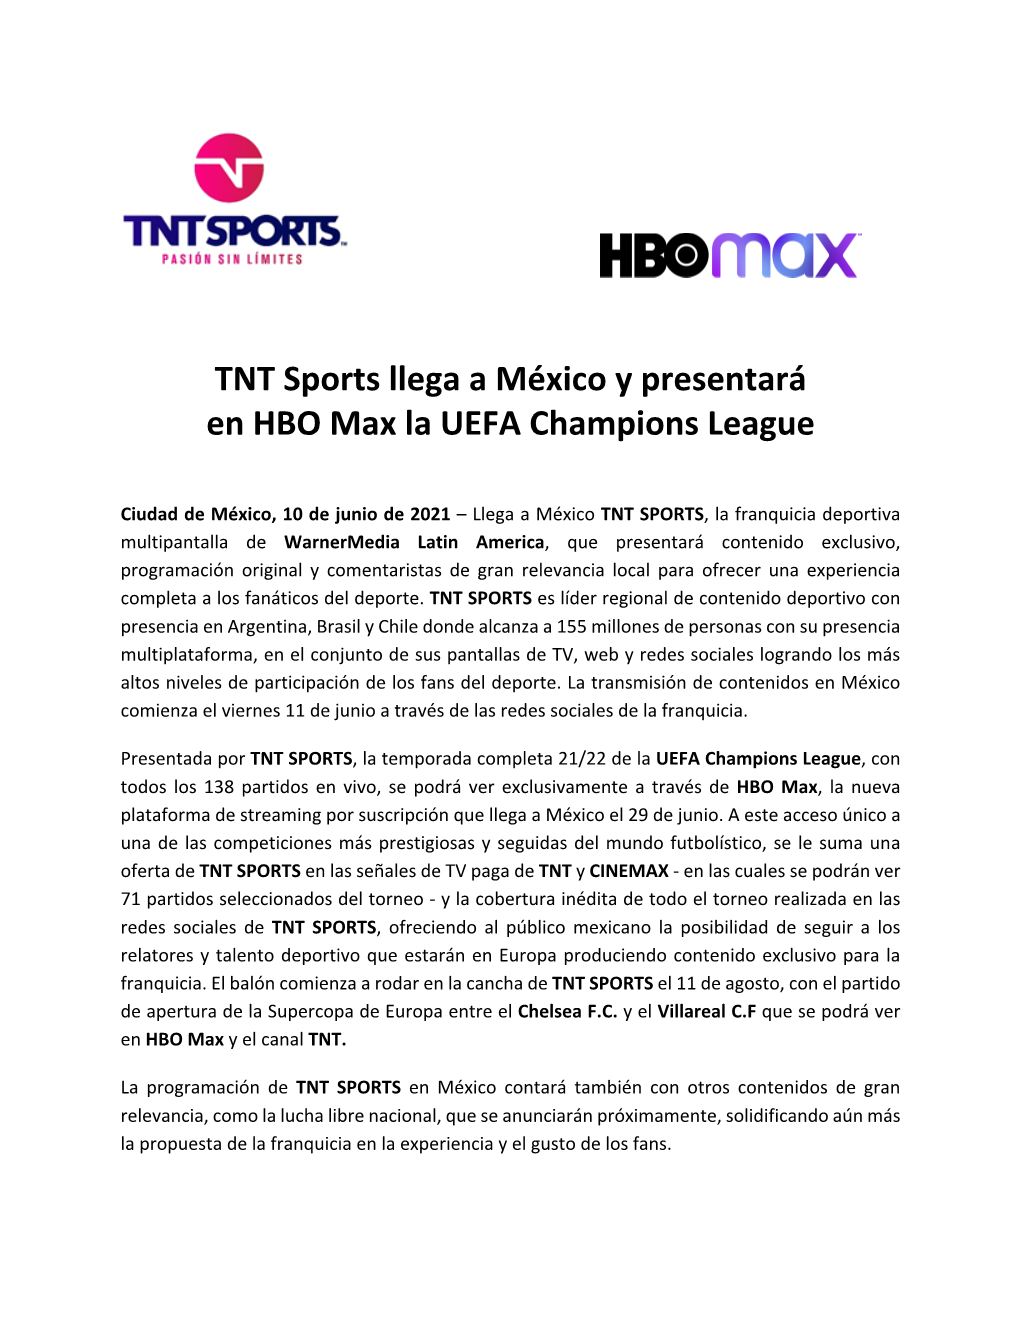 TNT Sports Llega a México Y Presentará En HBO Max La UEFA Champions League